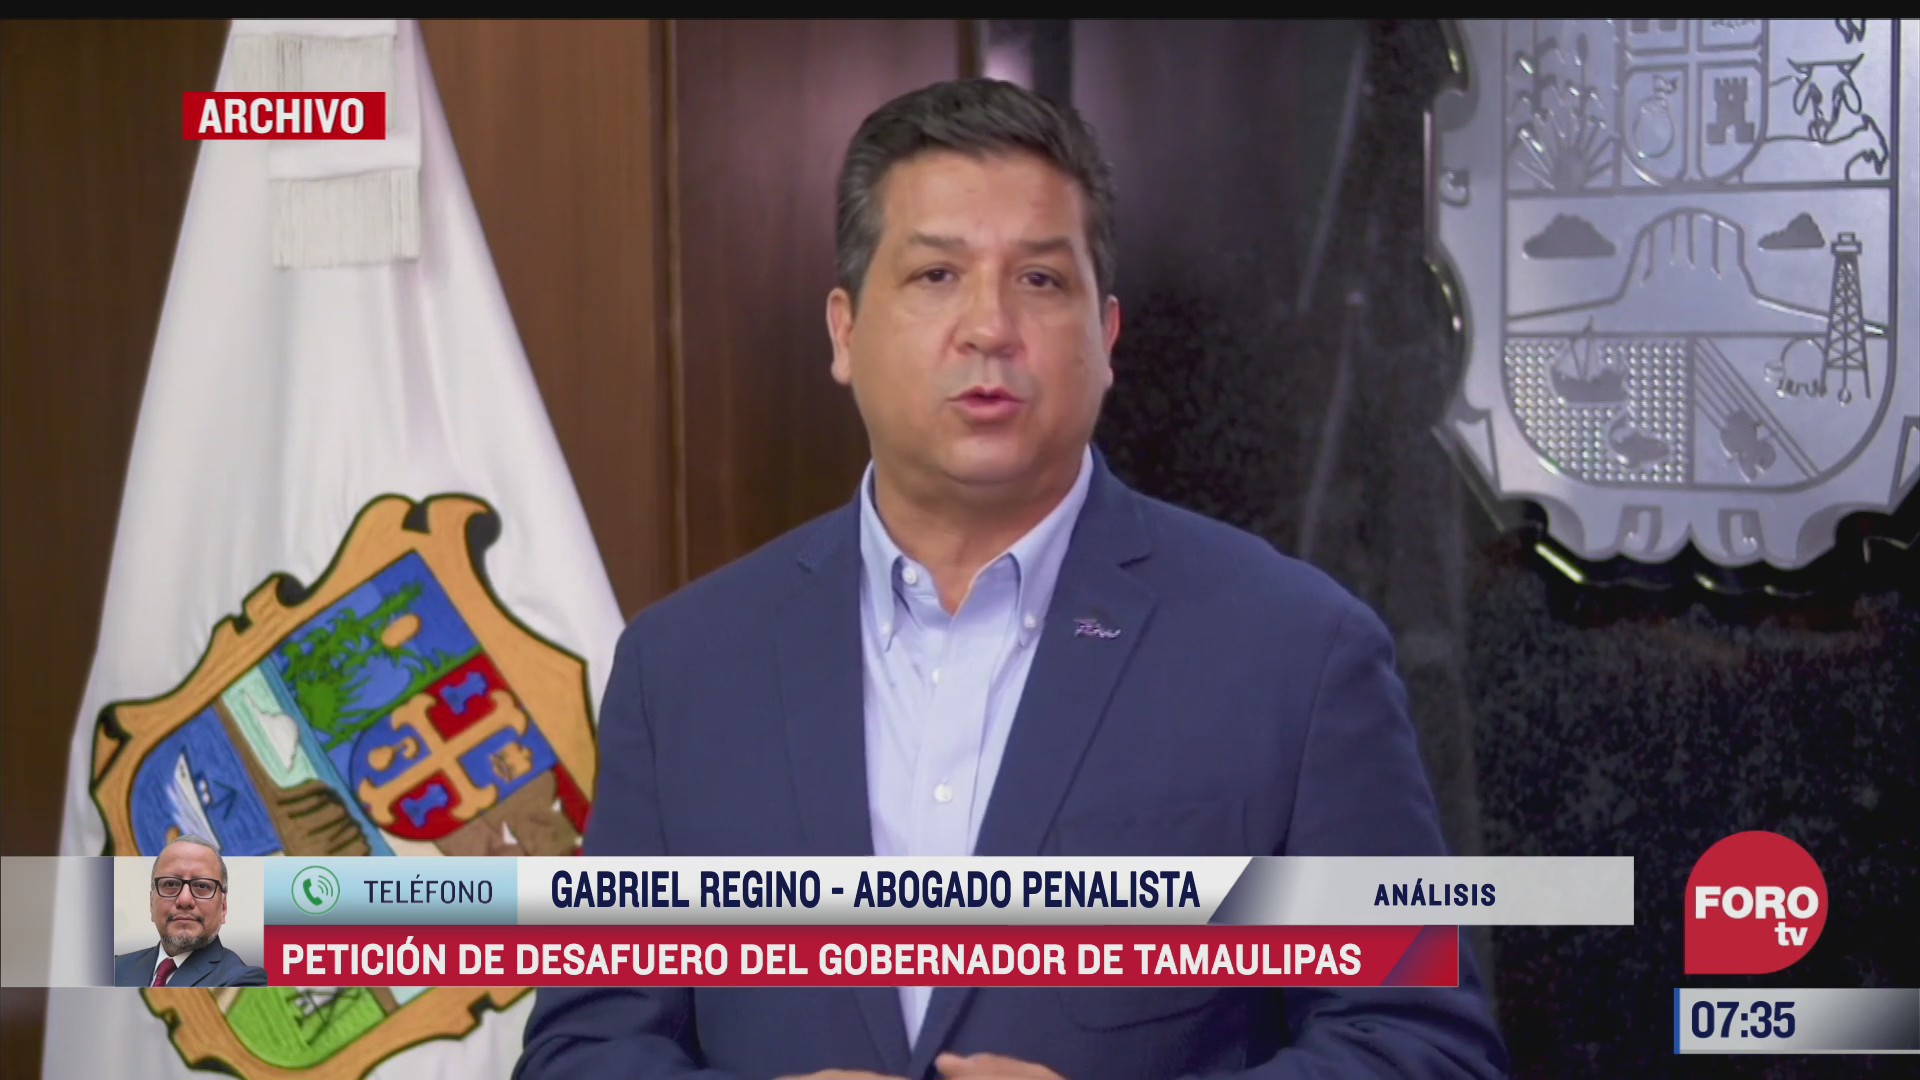 peticion de desafuero del gobernador de tamaulipas el analisis en estrictamente personal